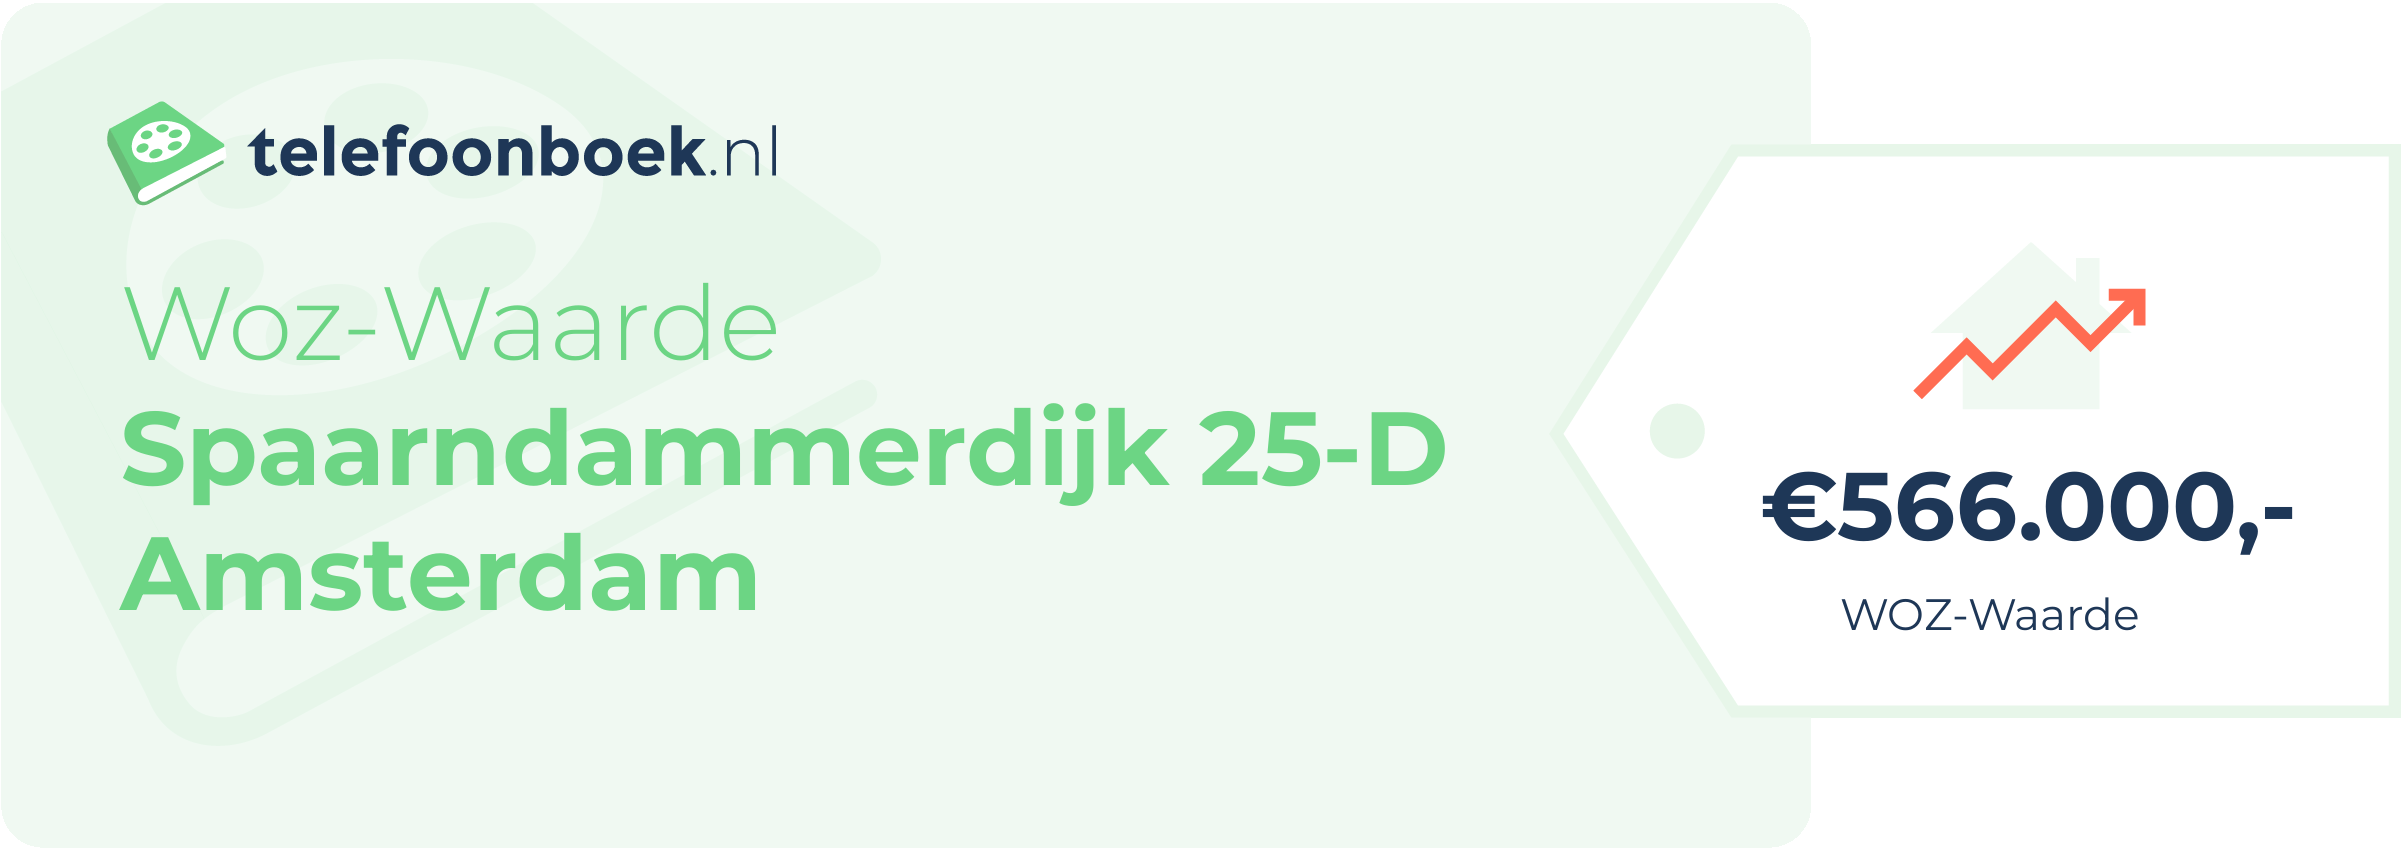 WOZ-waarde Spaarndammerdijk 25-D Amsterdam